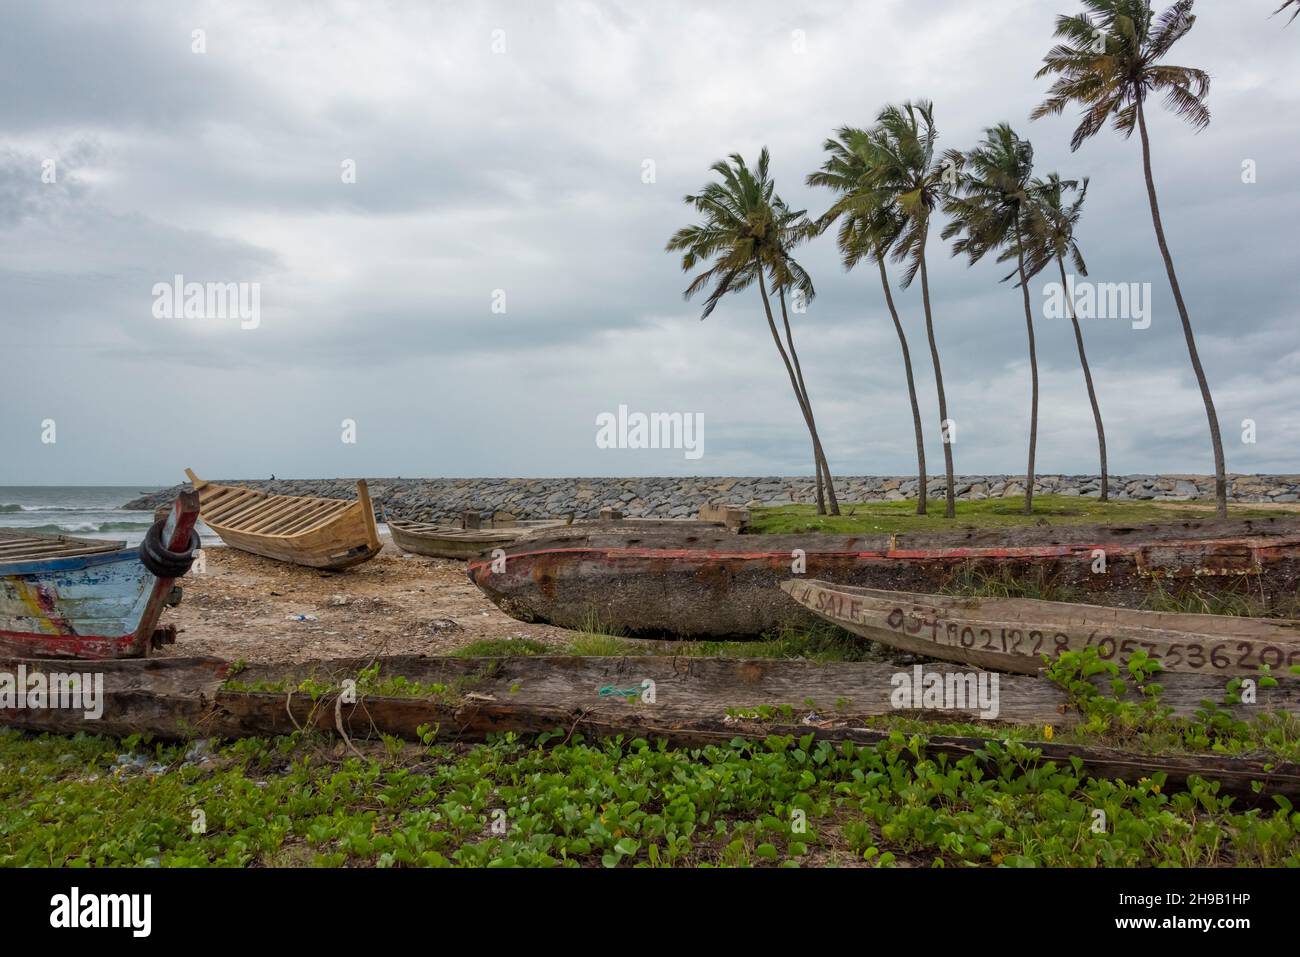 Fishing boats on the beach, Elmina, Central Region, Ghana Stock Photo